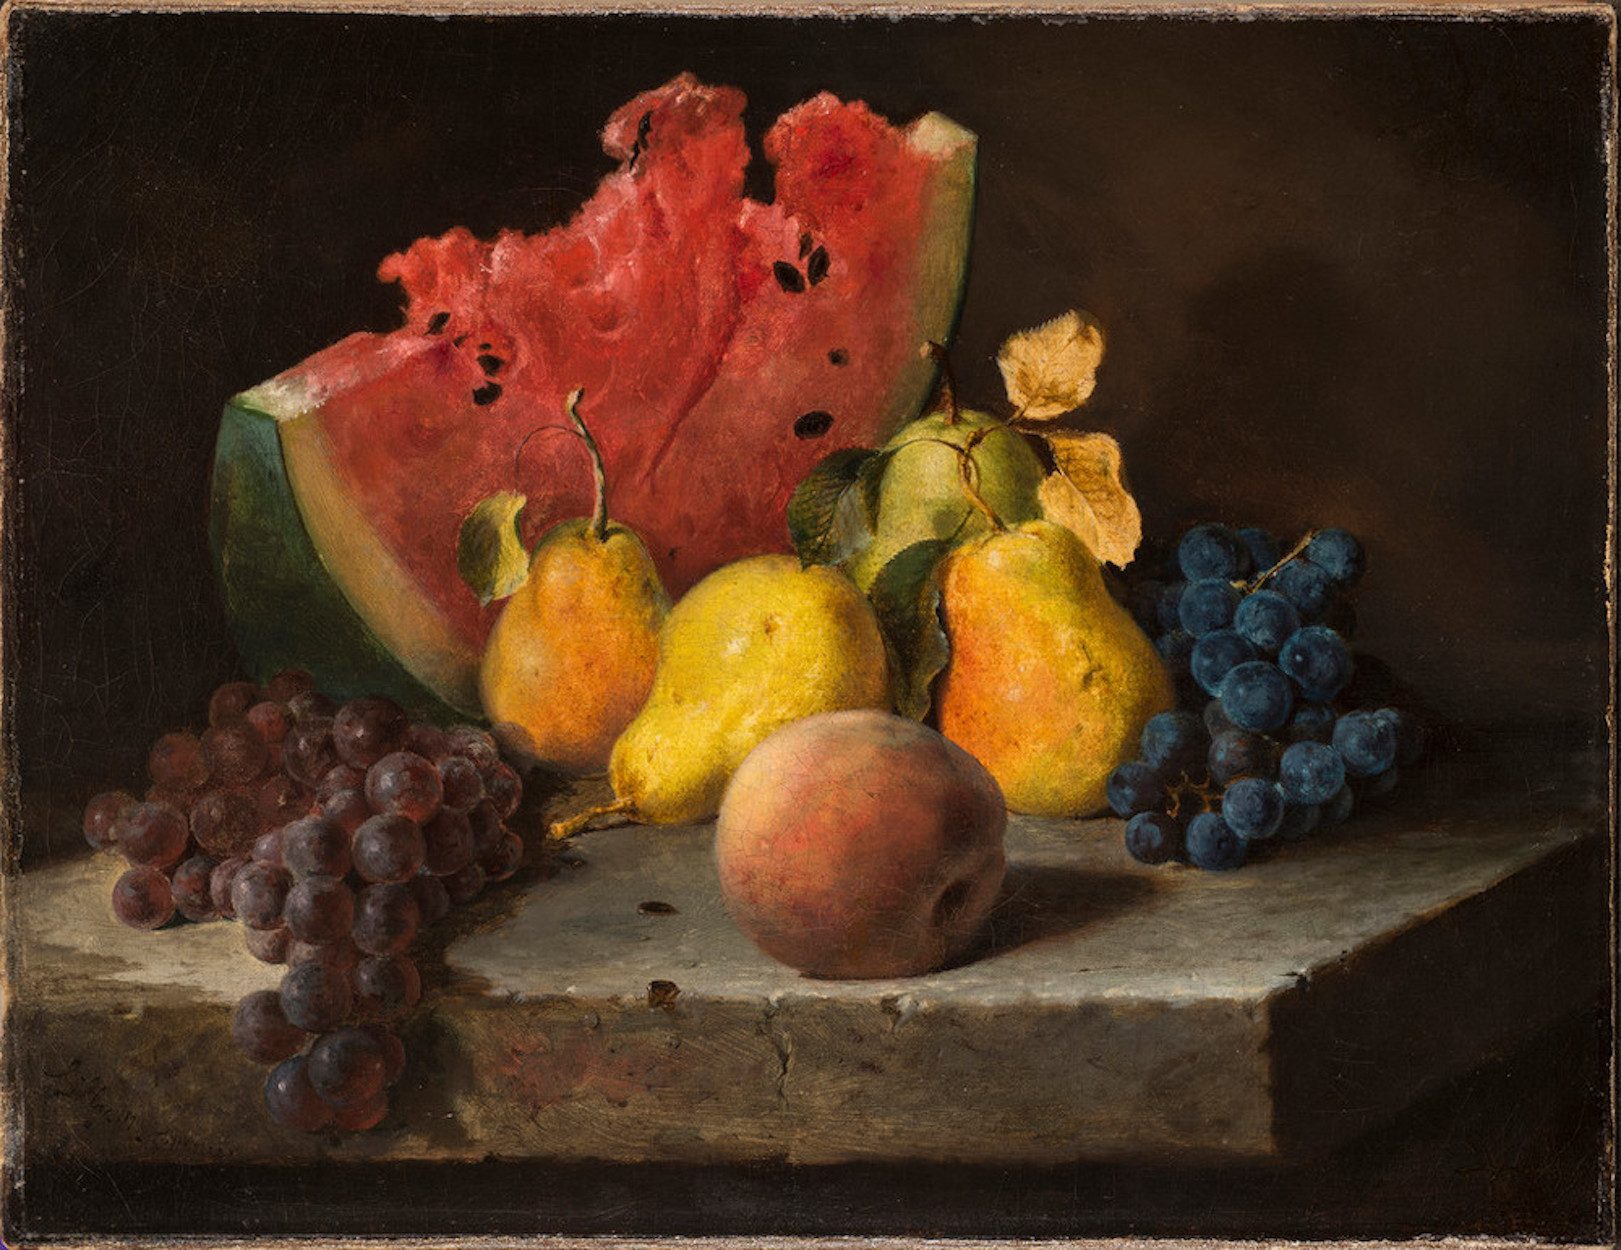 Csendélet görögdinnyével, körtékkel, szőlővel by Lilly Martin Spencer - 1860 - 33 x 43,5 cm 